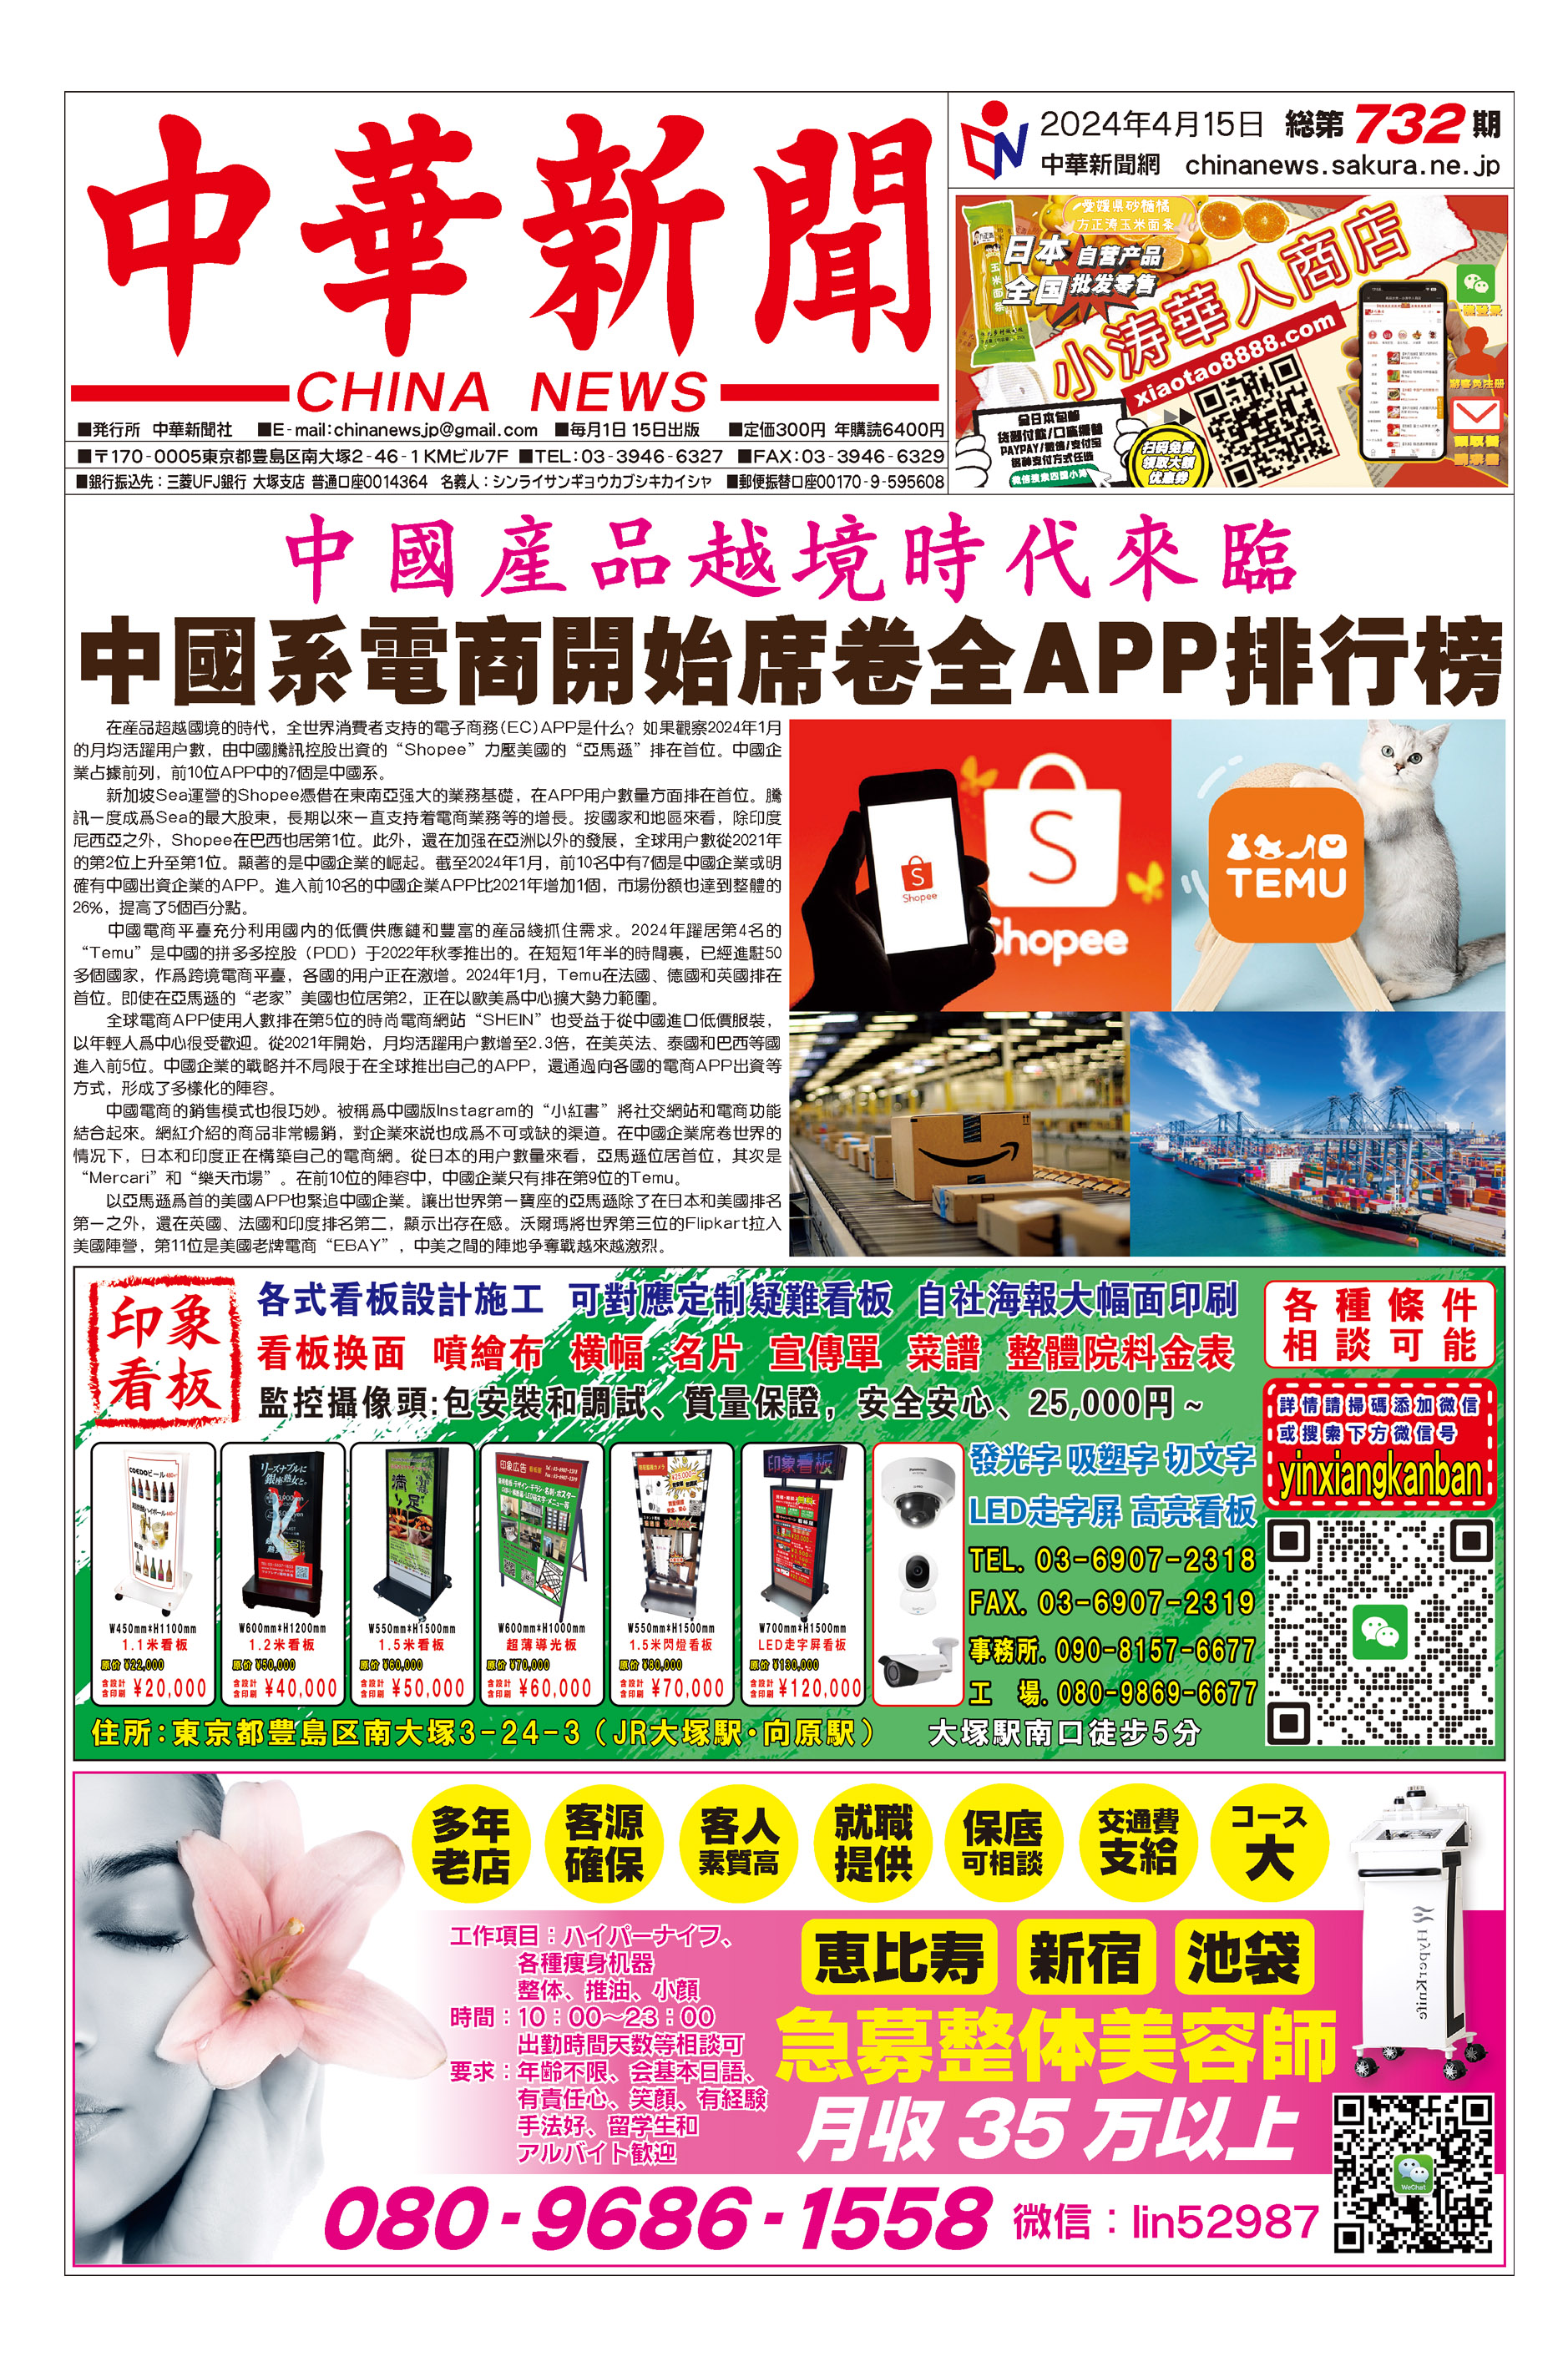  中華新聞（微信版4.15）第732期 